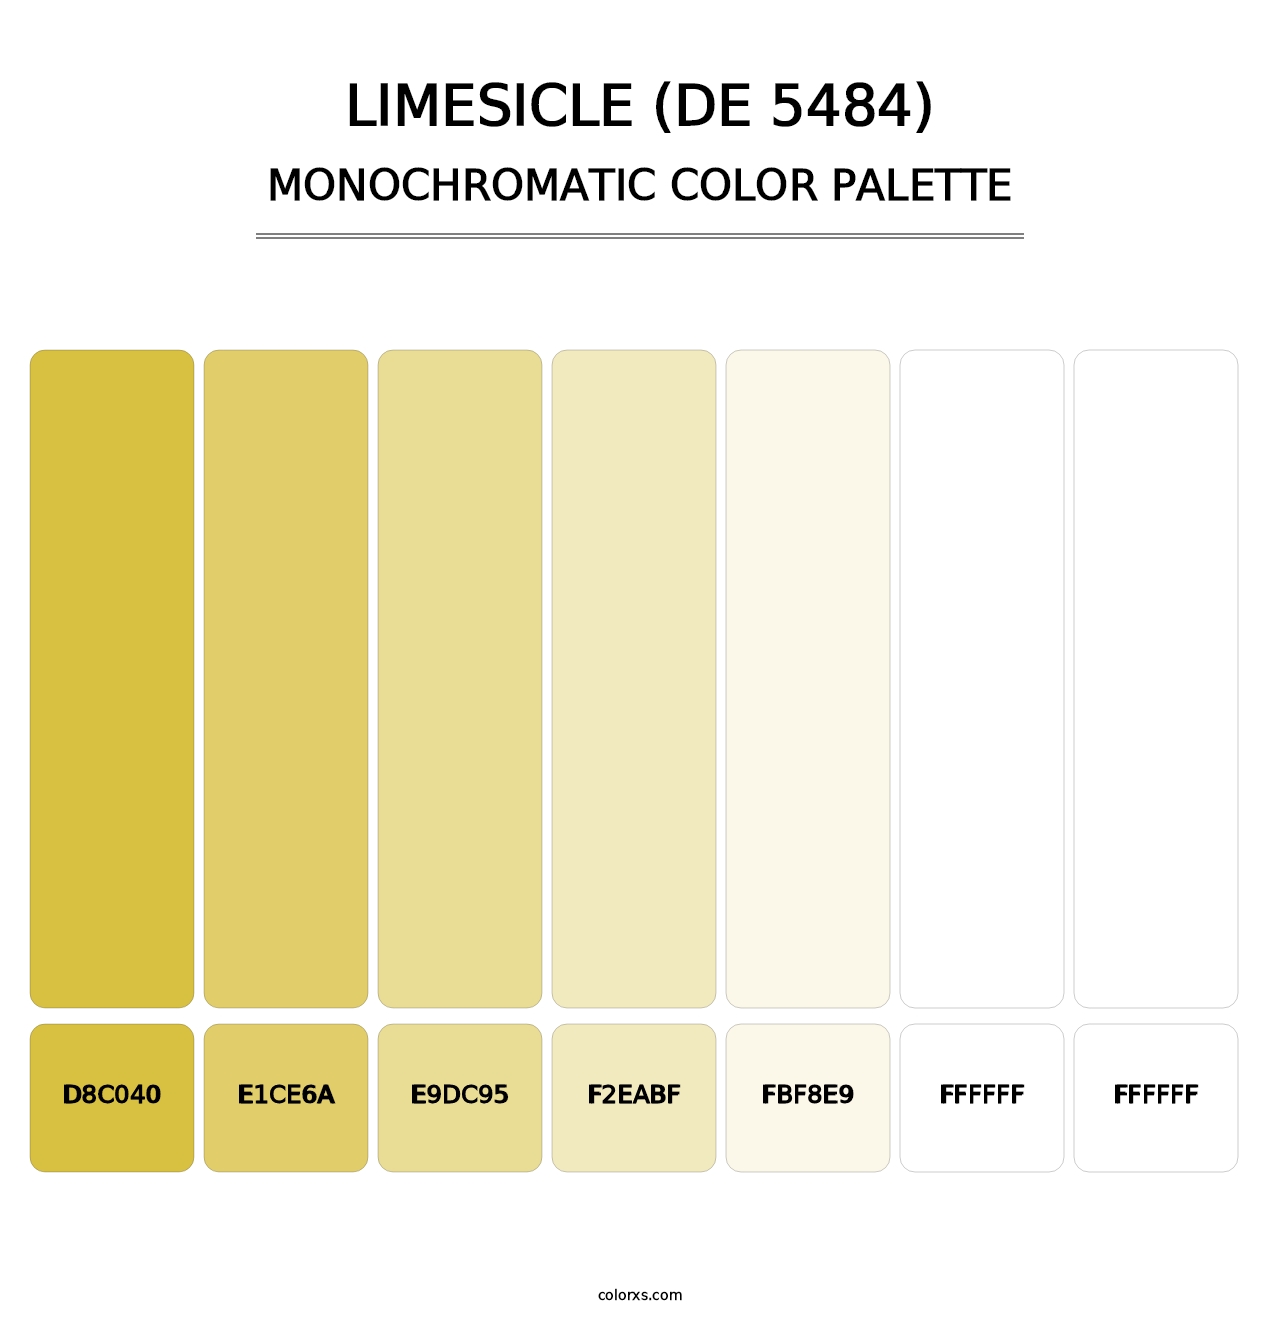 Limesicle (DE 5484) - Monochromatic Color Palette